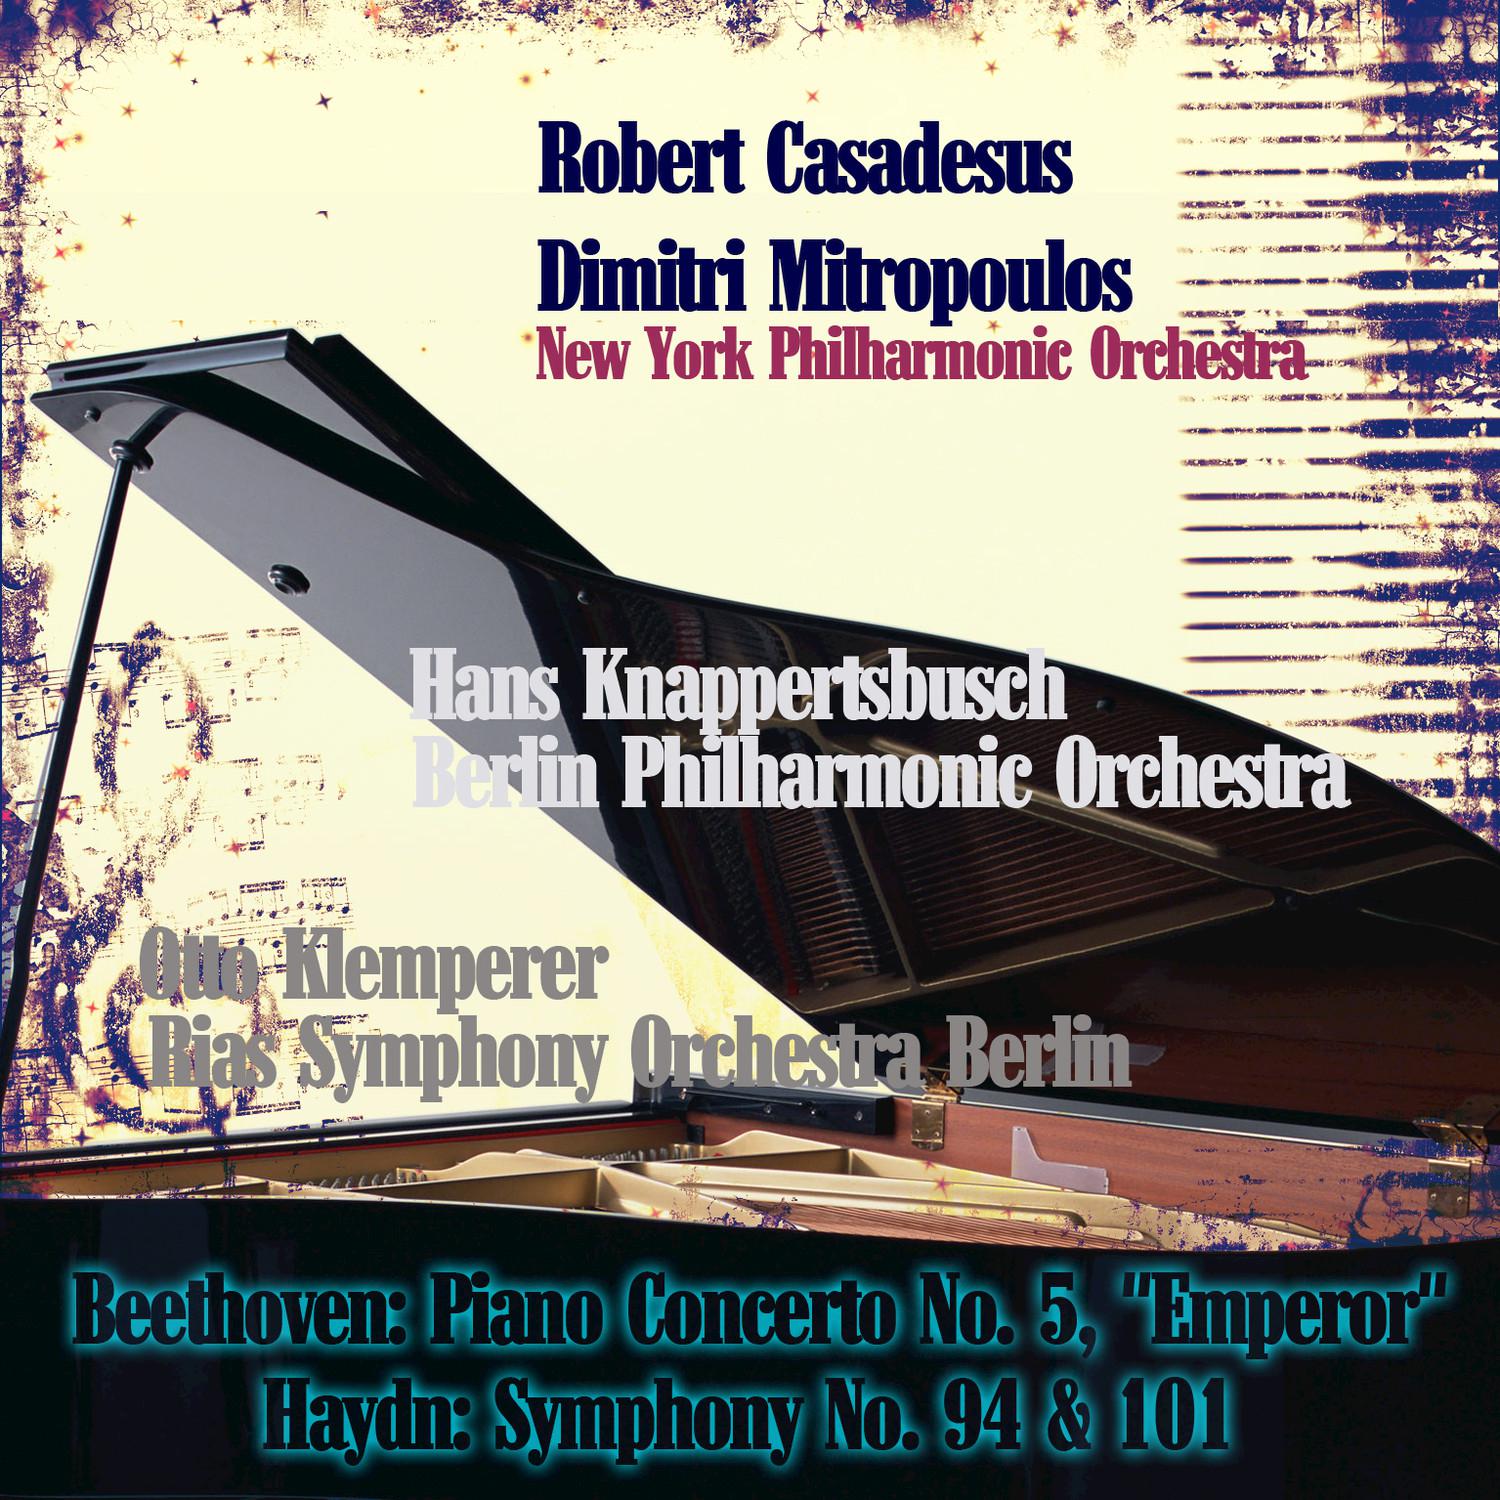 Piano Concerto No. 5 in E-Flat Major, Op. 73: III. Rondo: Allegro ma non troppo